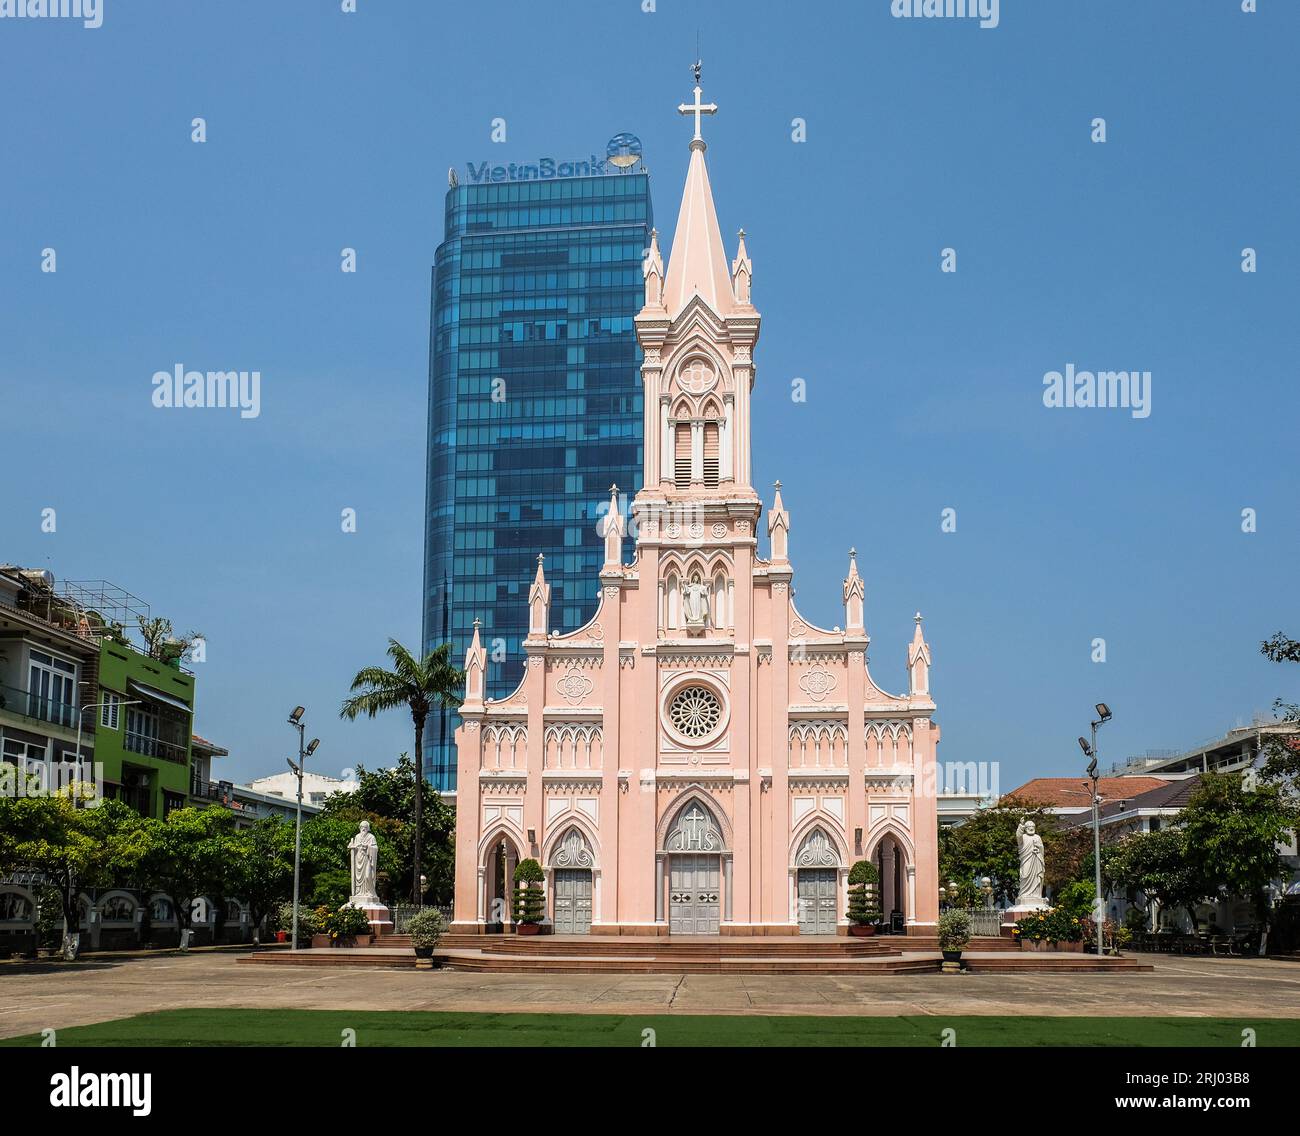 Vue extérieure de la cathédrale de Da Nang (Basilique du Sacré-Cœur de Jésus). Da nang, Vietnam. Banque D'Images